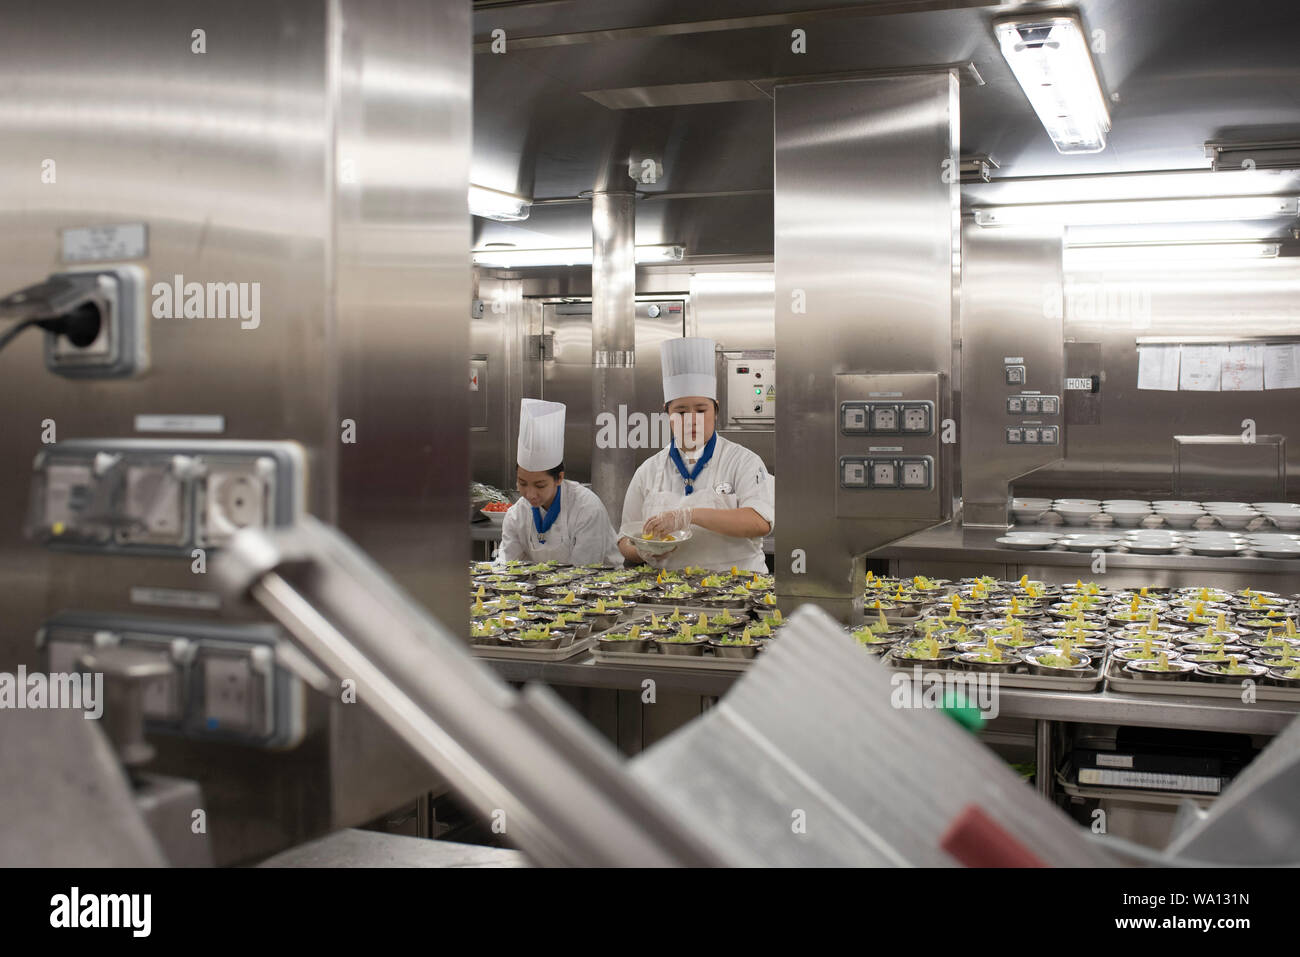 Près de 1000 personnes en Küche travaillent à un rythme effréné. Les entrées, Les plats et les Desserts sind préparés dans les différents endroits. Stockfoto